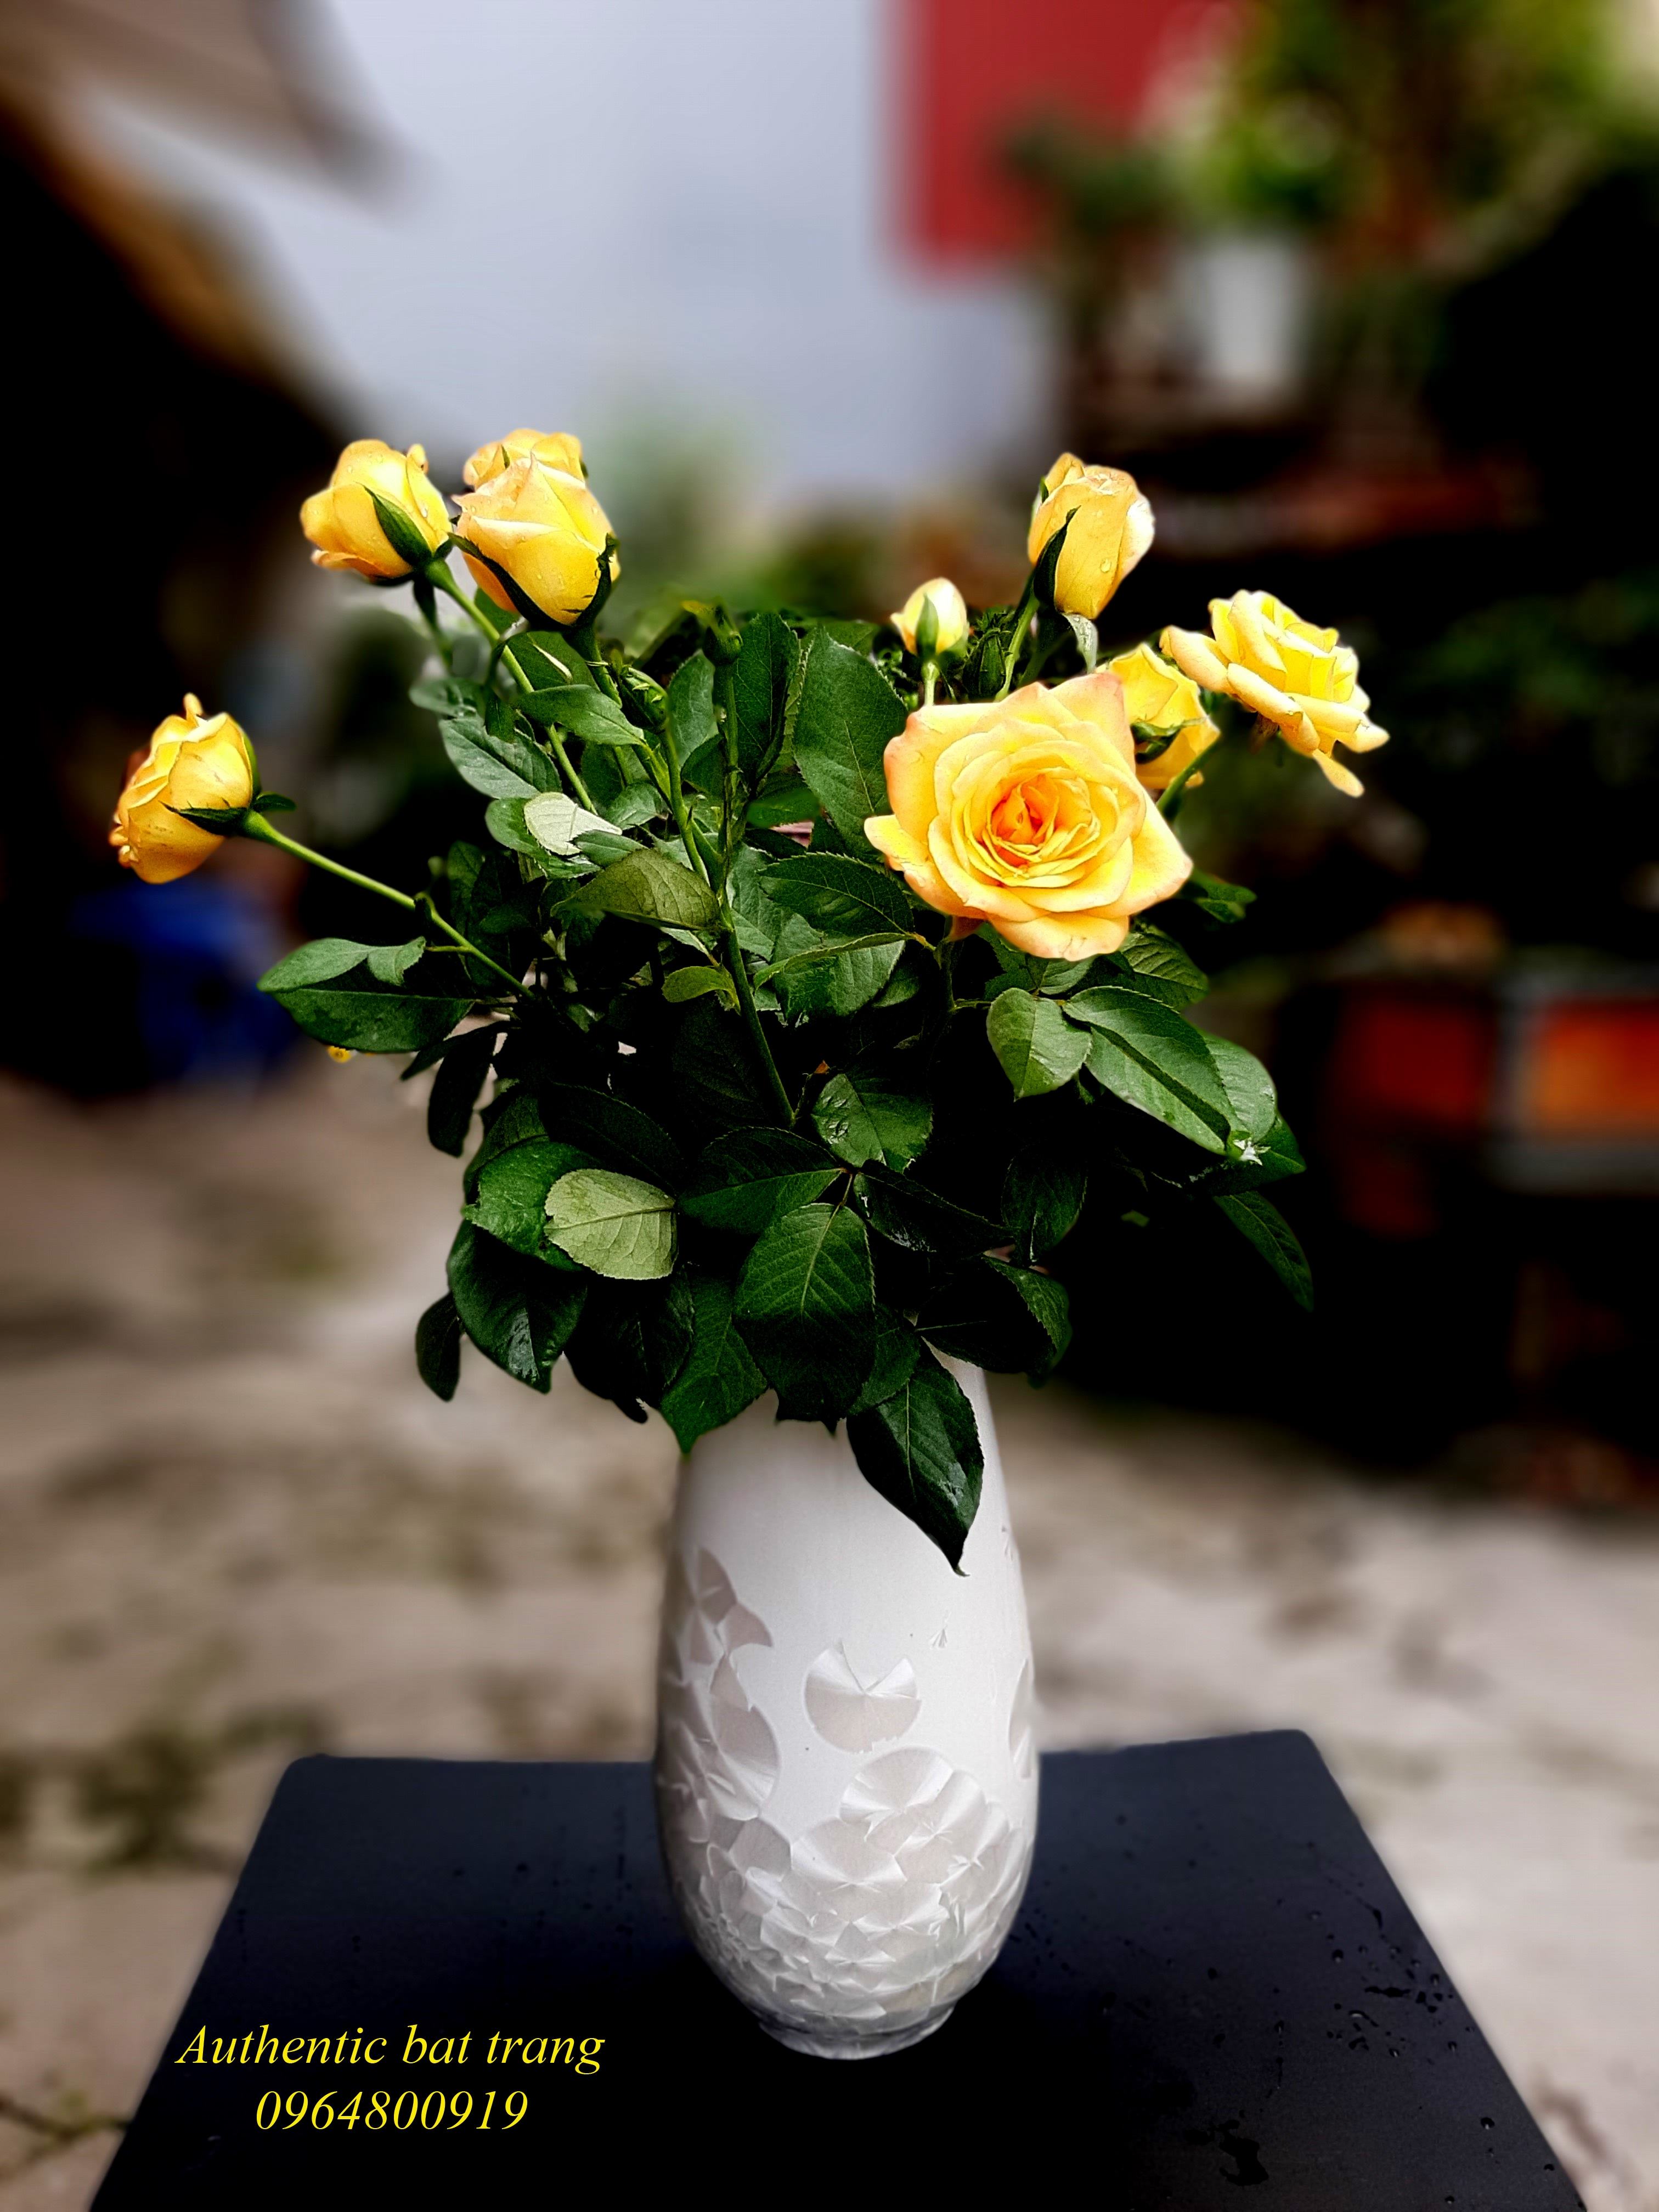 SIÊU RẺ VÀ ĐẸP- Bình cắm hoa size lớn ,men kết tinh TRẮNG sản xuất tại xưởng gốm sứ Authentic bát tràng